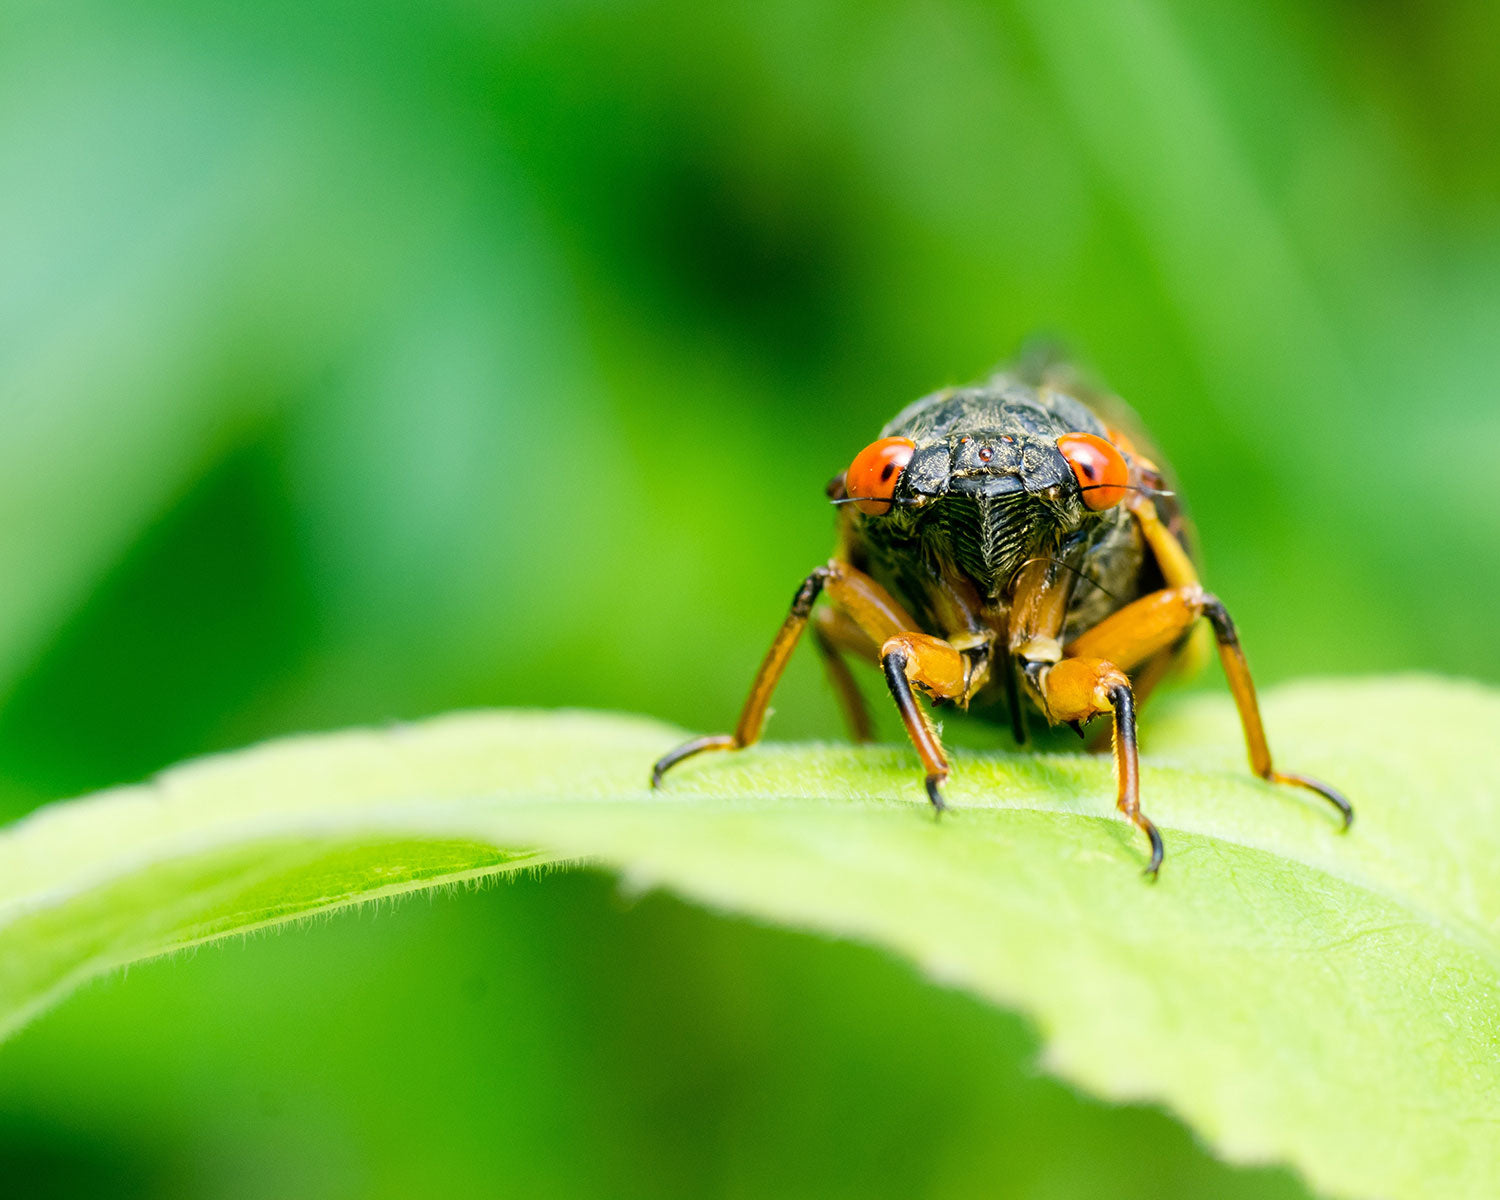 Cicada on a leaf with orange eyes